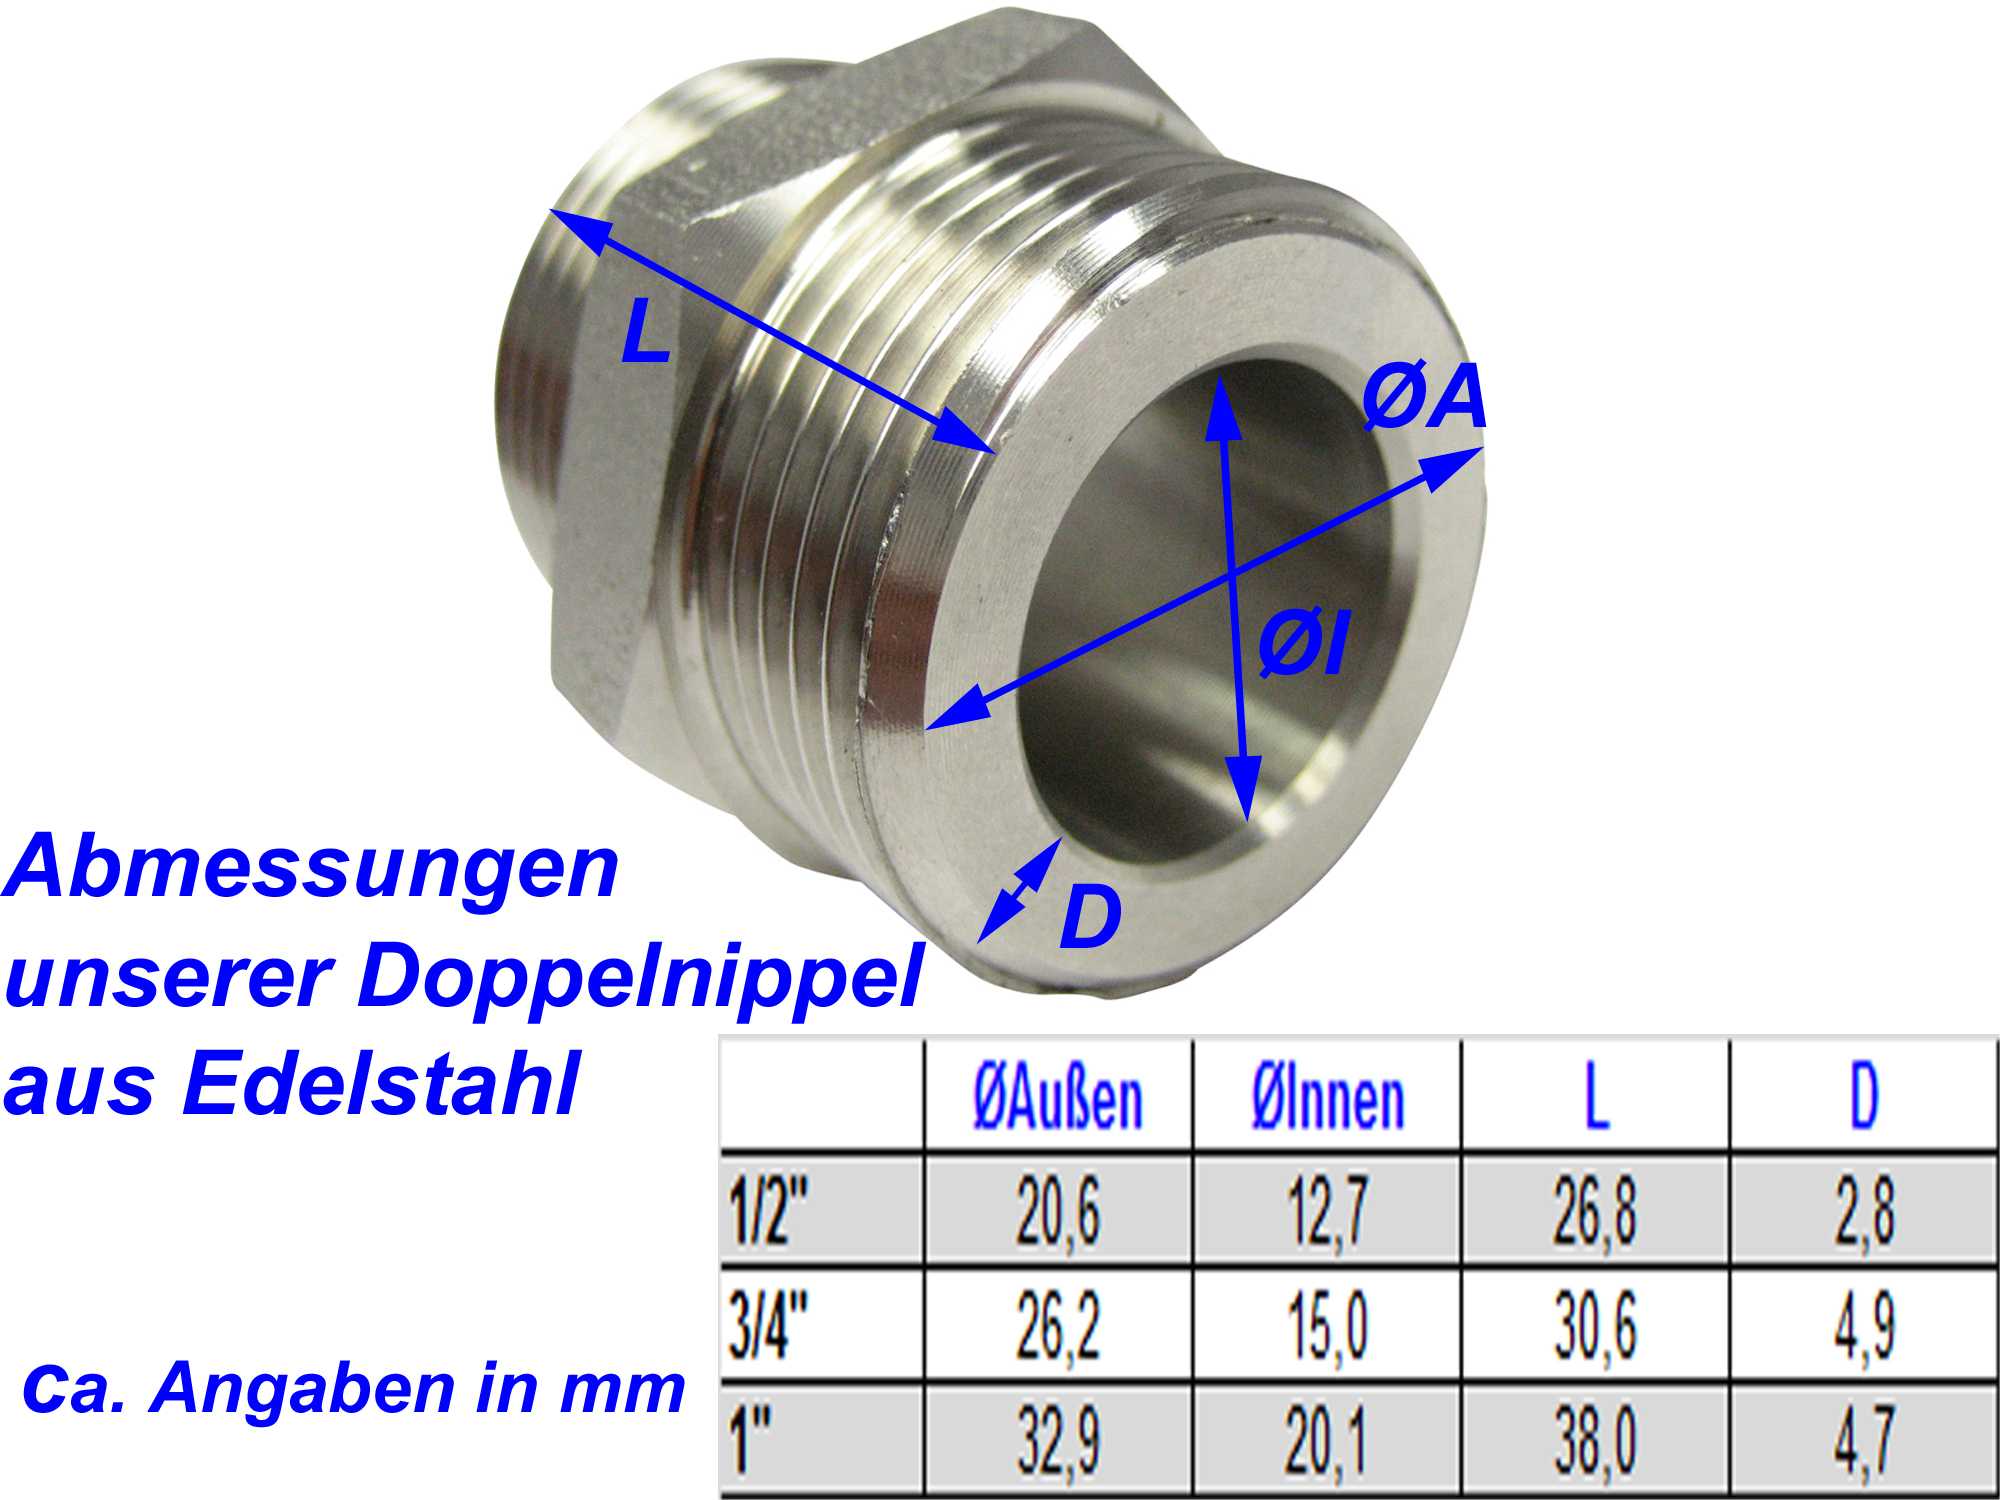 Doppelnippel aus Edelstahl flachdichtend in den Größen 1/2", 3/4" und 1" für Solar und Edelstahlwellrohr der Nennweiten DN12, DN16 und DN20